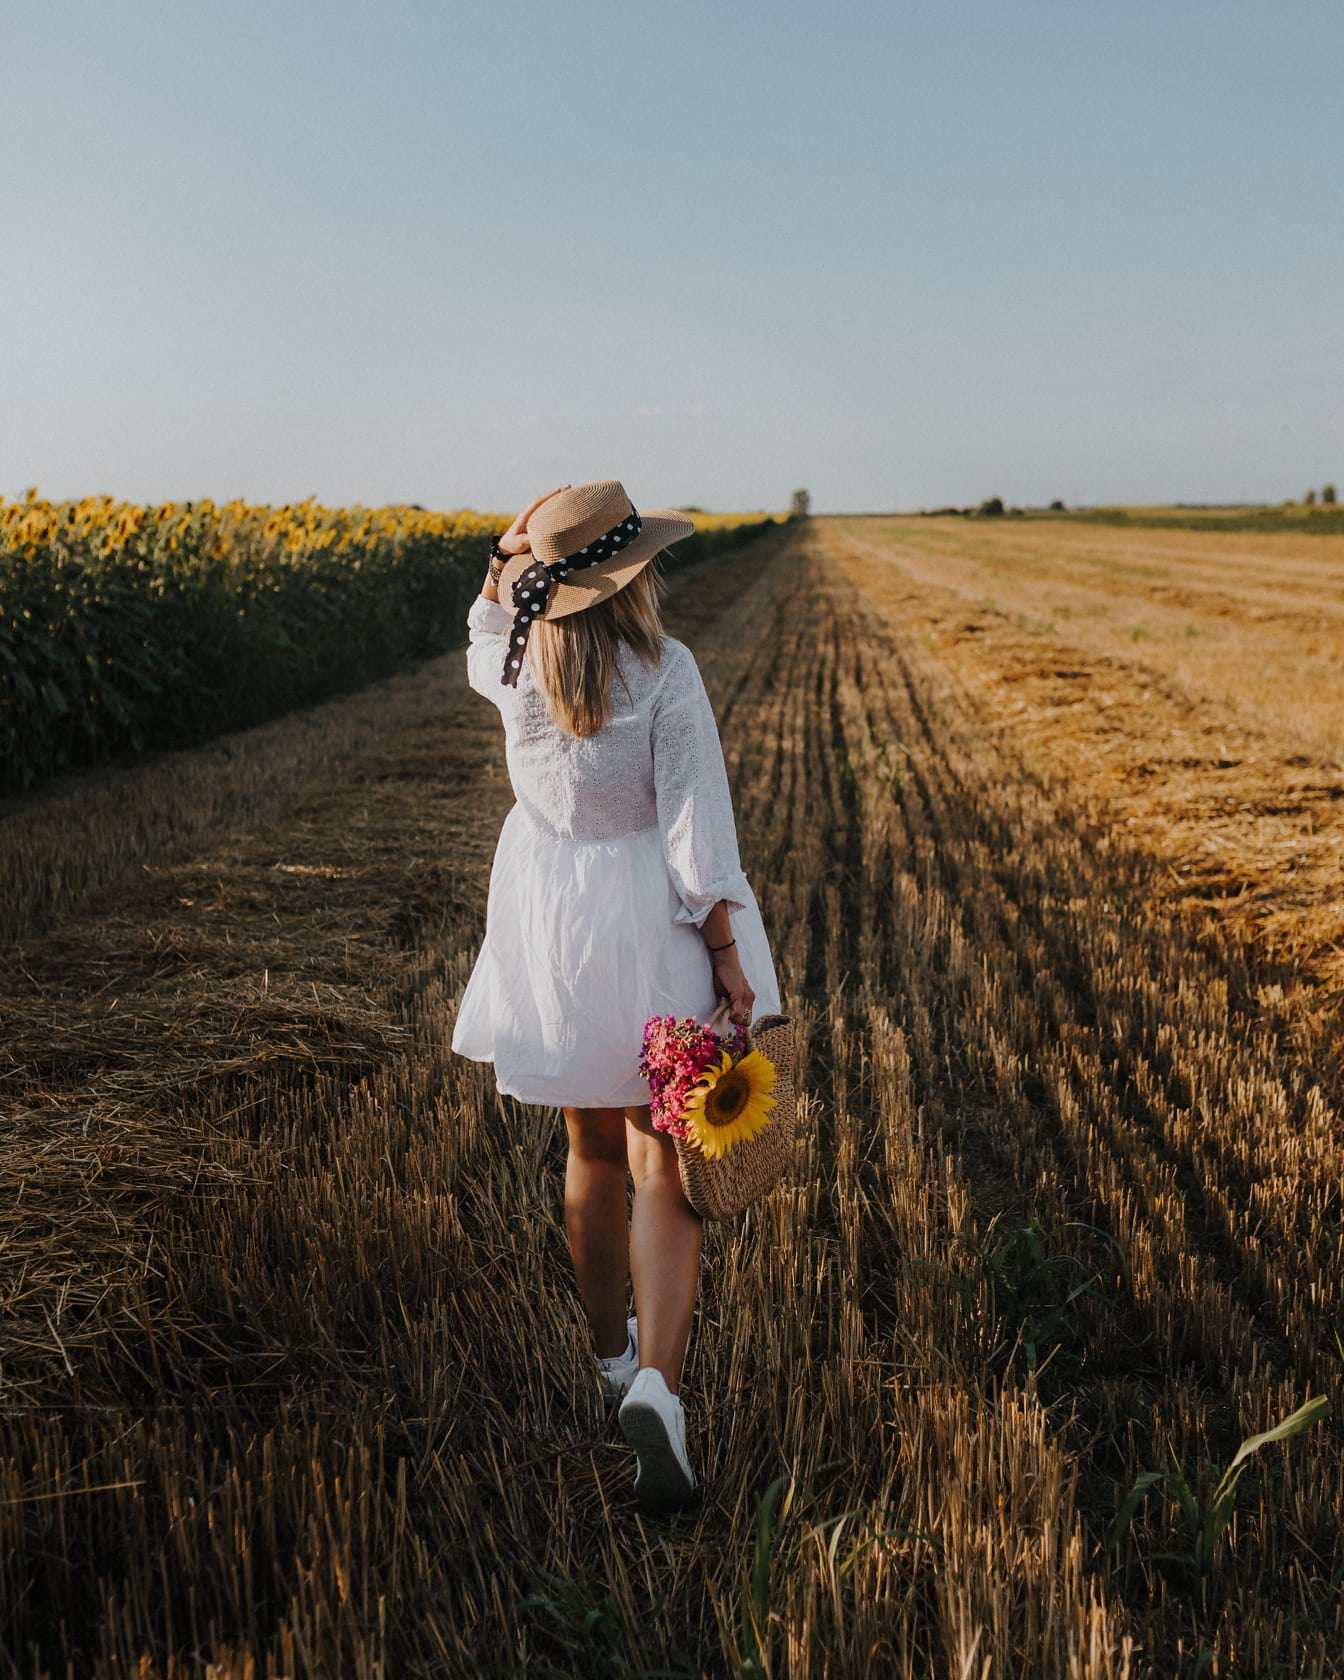 Vestido blanco y sombrero en la mujer en el campo de trigo